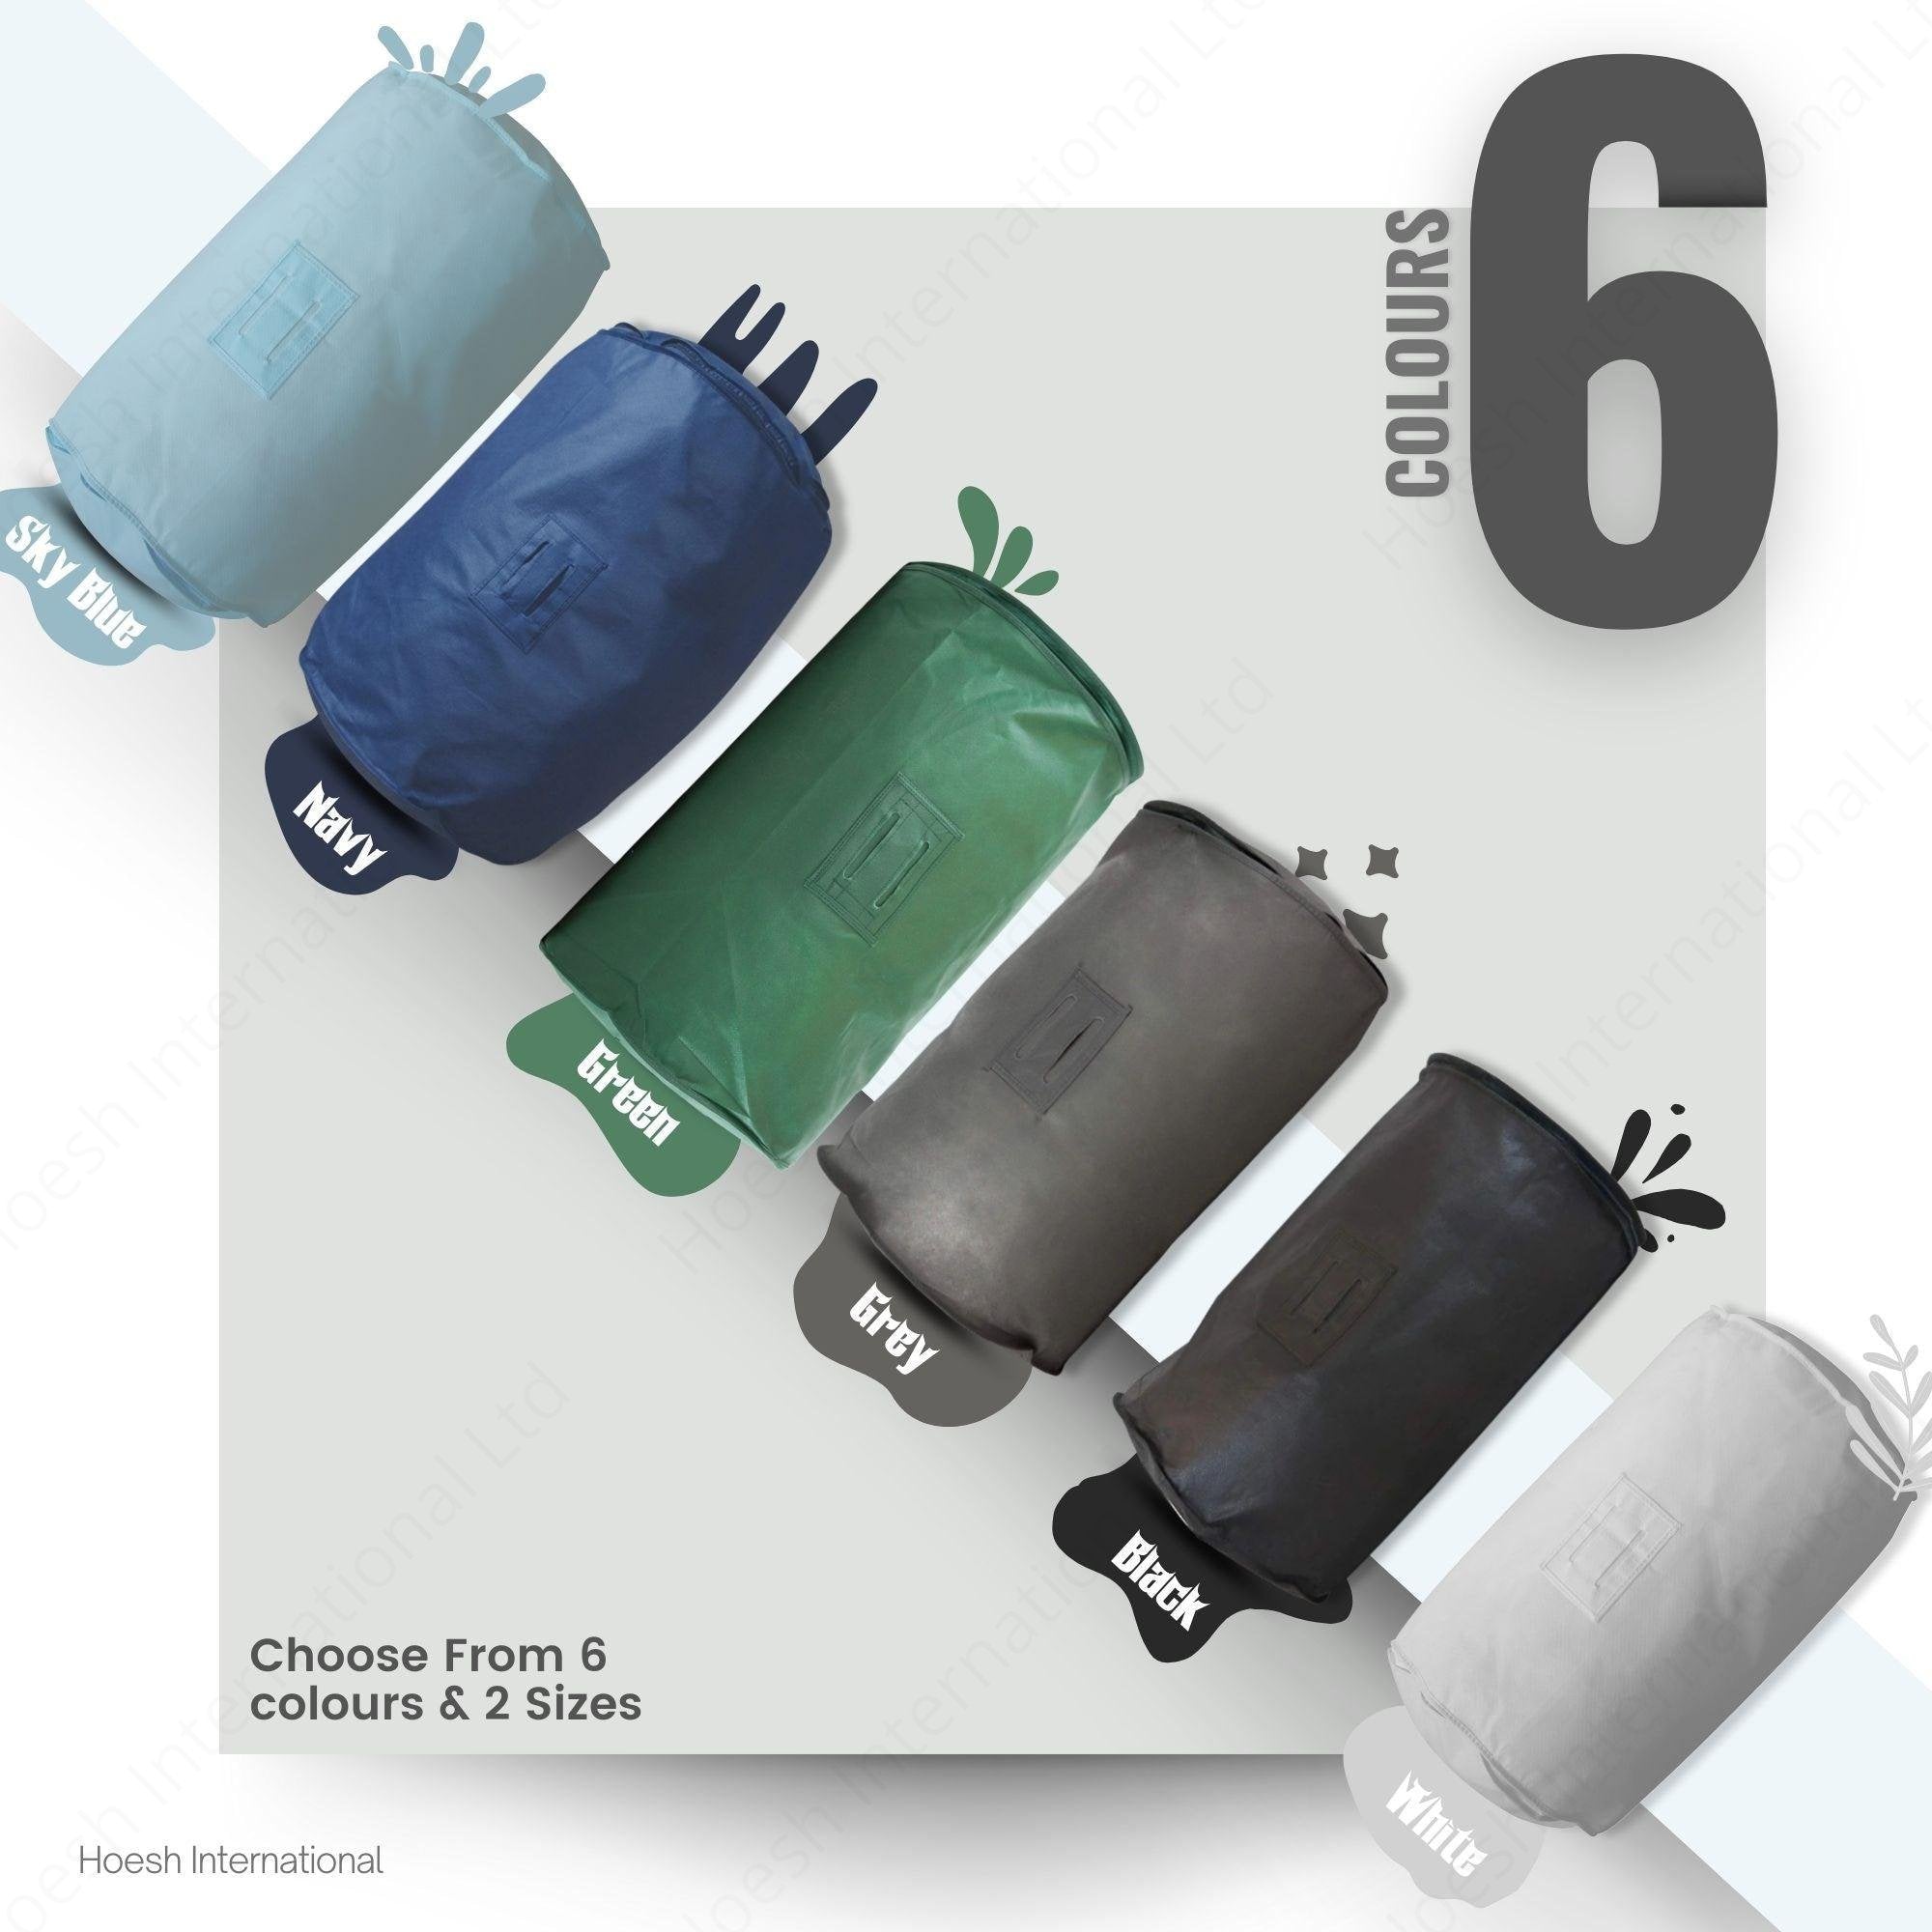 Breathable duvet bags - Hoesh International Ltd